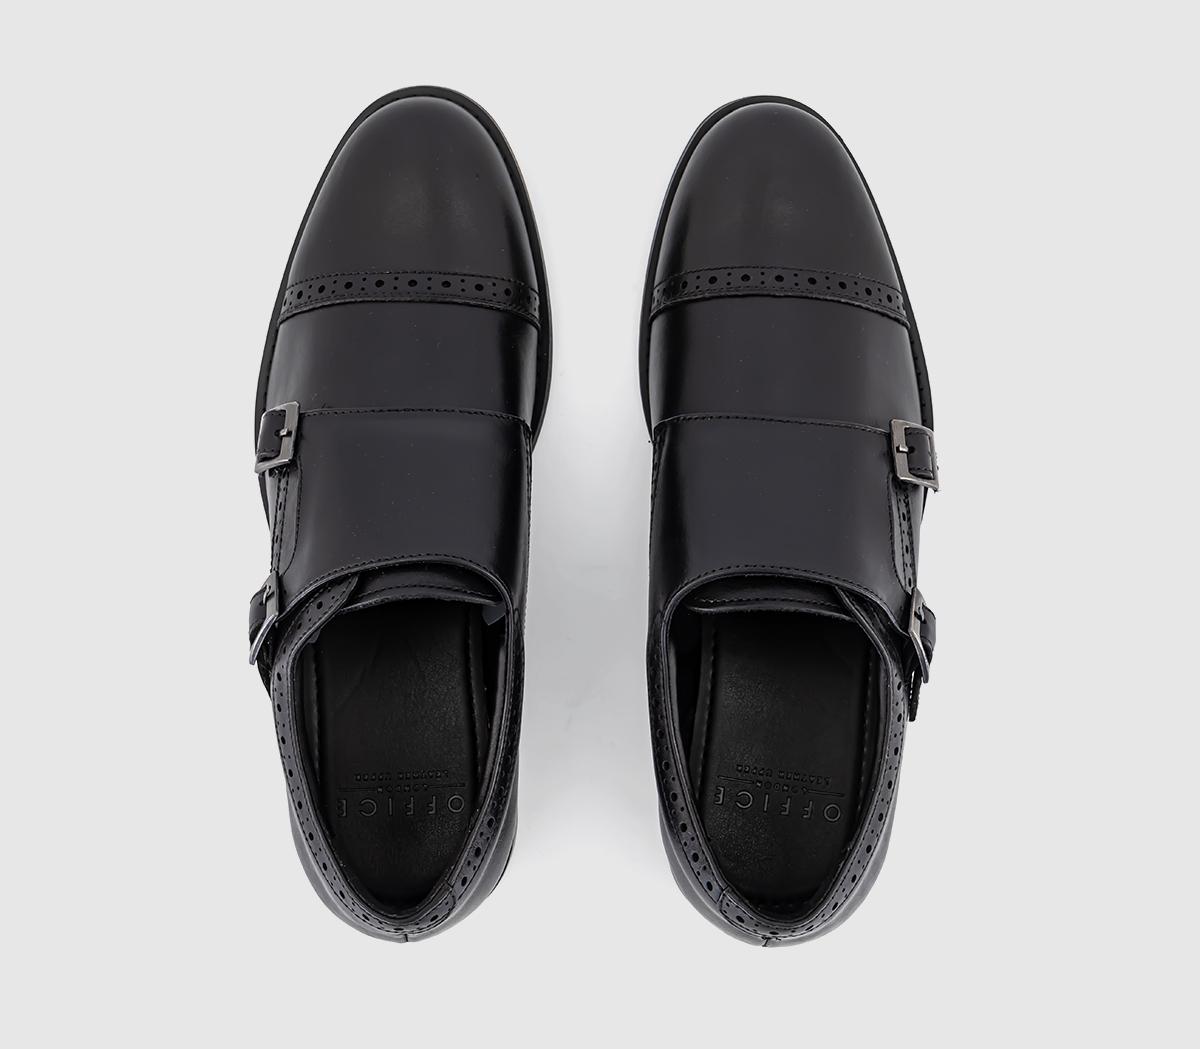 OFFICE Myles Double Strap Monk Shoes Black Leather - Men’s Smart Shoes